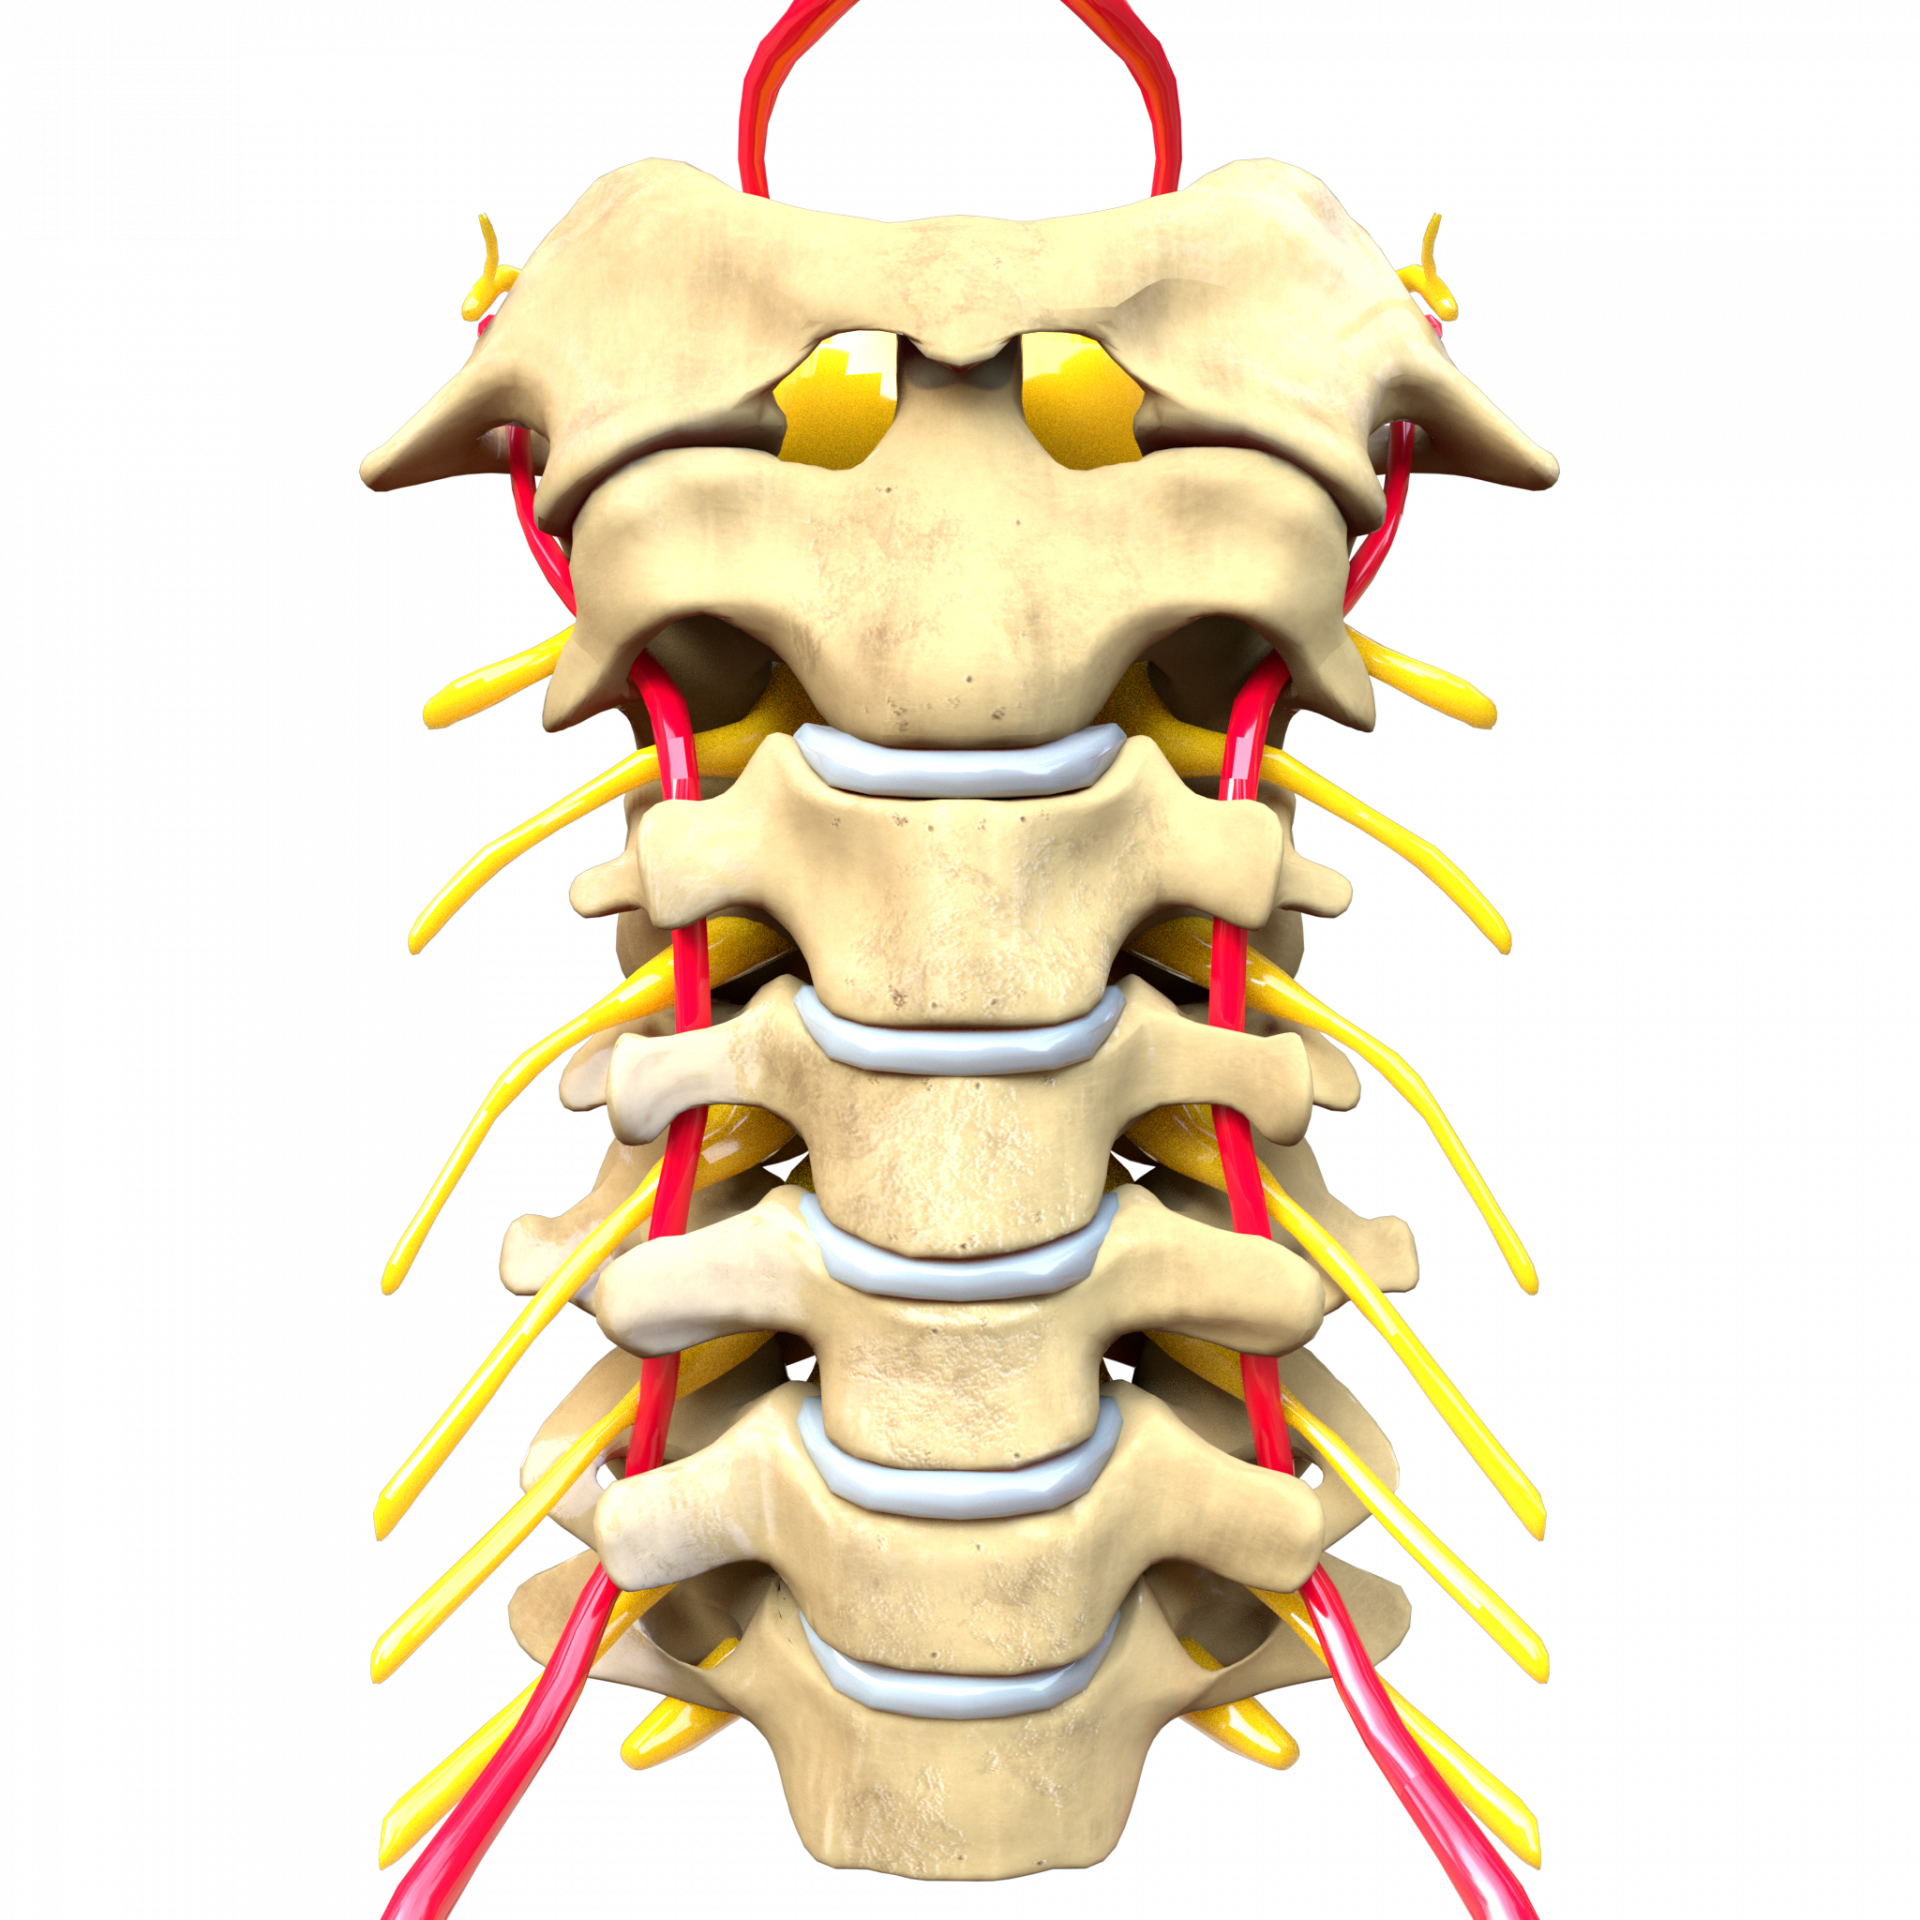 Cervikal rygsøjle: Anatomi og 8 mulige patologier (hvornår skal du bekymre dig?)